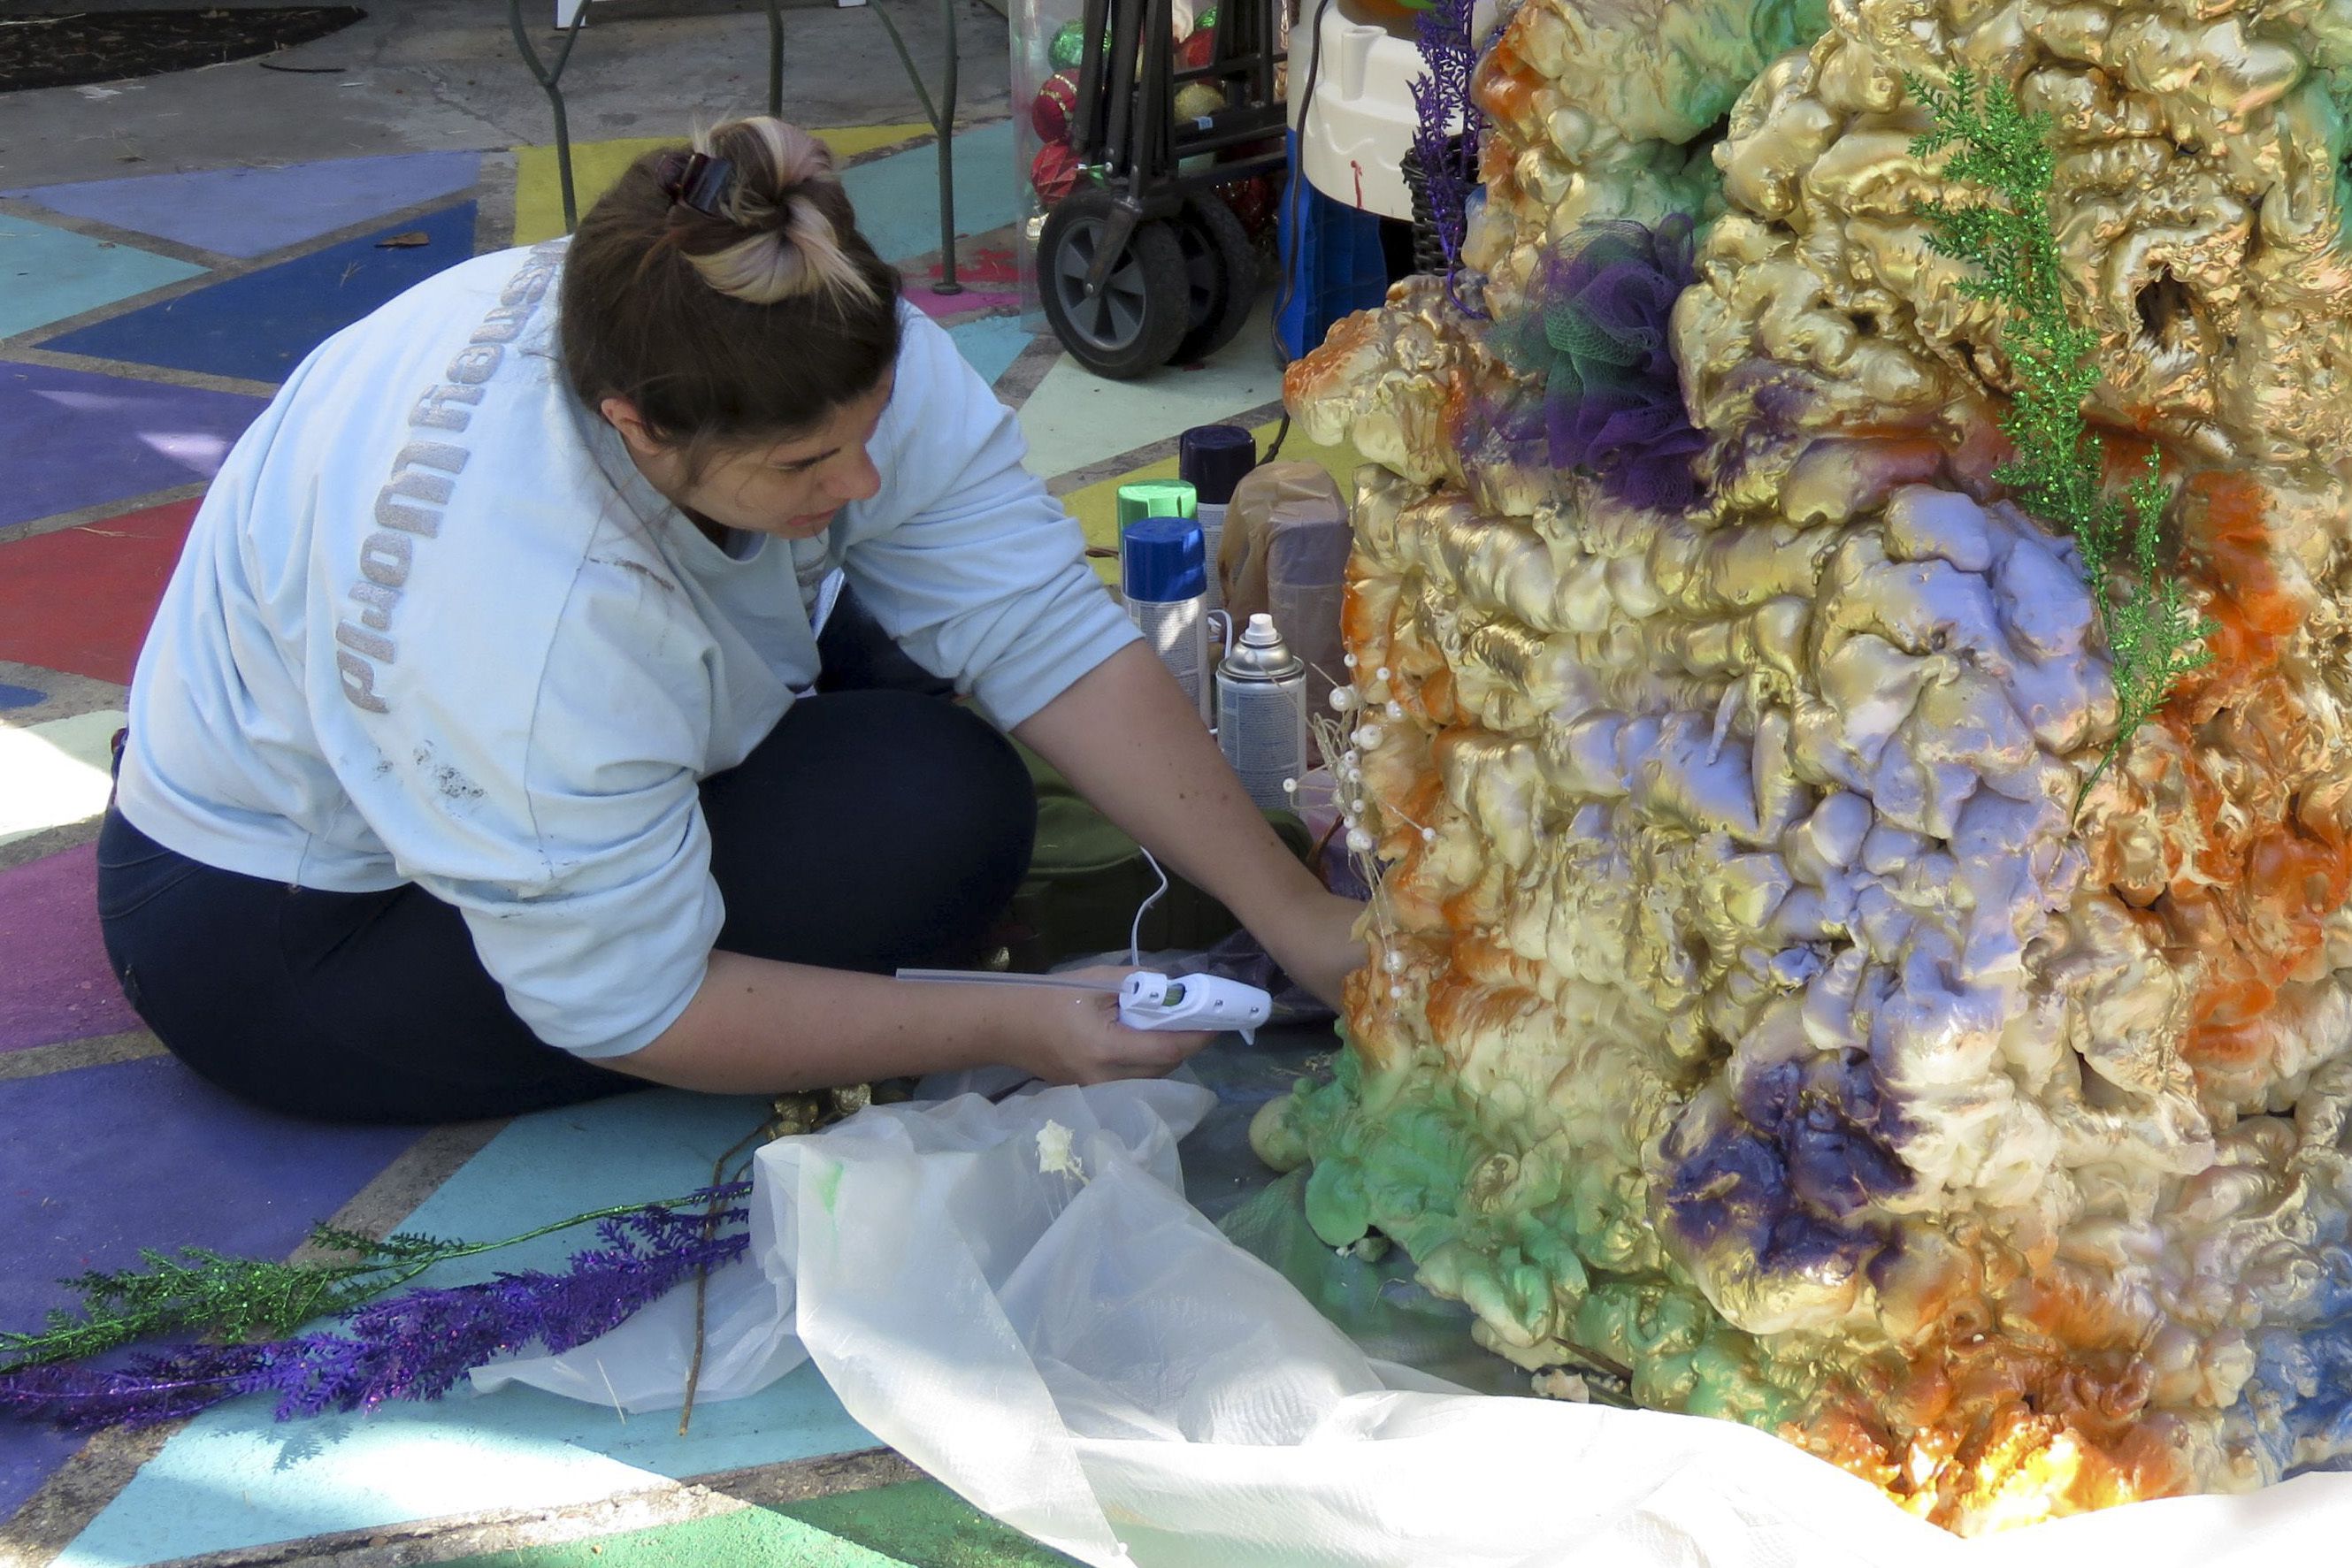 Carley Sercovich trabaja en un arrecife de coral hecho con cajas y pintura en aerosol mientras decora su casa como carroza de Mardi Gras en el barrio de Algiers Point, en Nueva Orleans, el viernes 15 de enero de 2021. Con la cancelación de los tradicionales desfiles de Mardi Gras debido a la pandemia de coronavirus, miles alrededor de la ciudad han decorado sus casas para celebrar el Carnaval. (AP Foto/Janet McConnaughey)